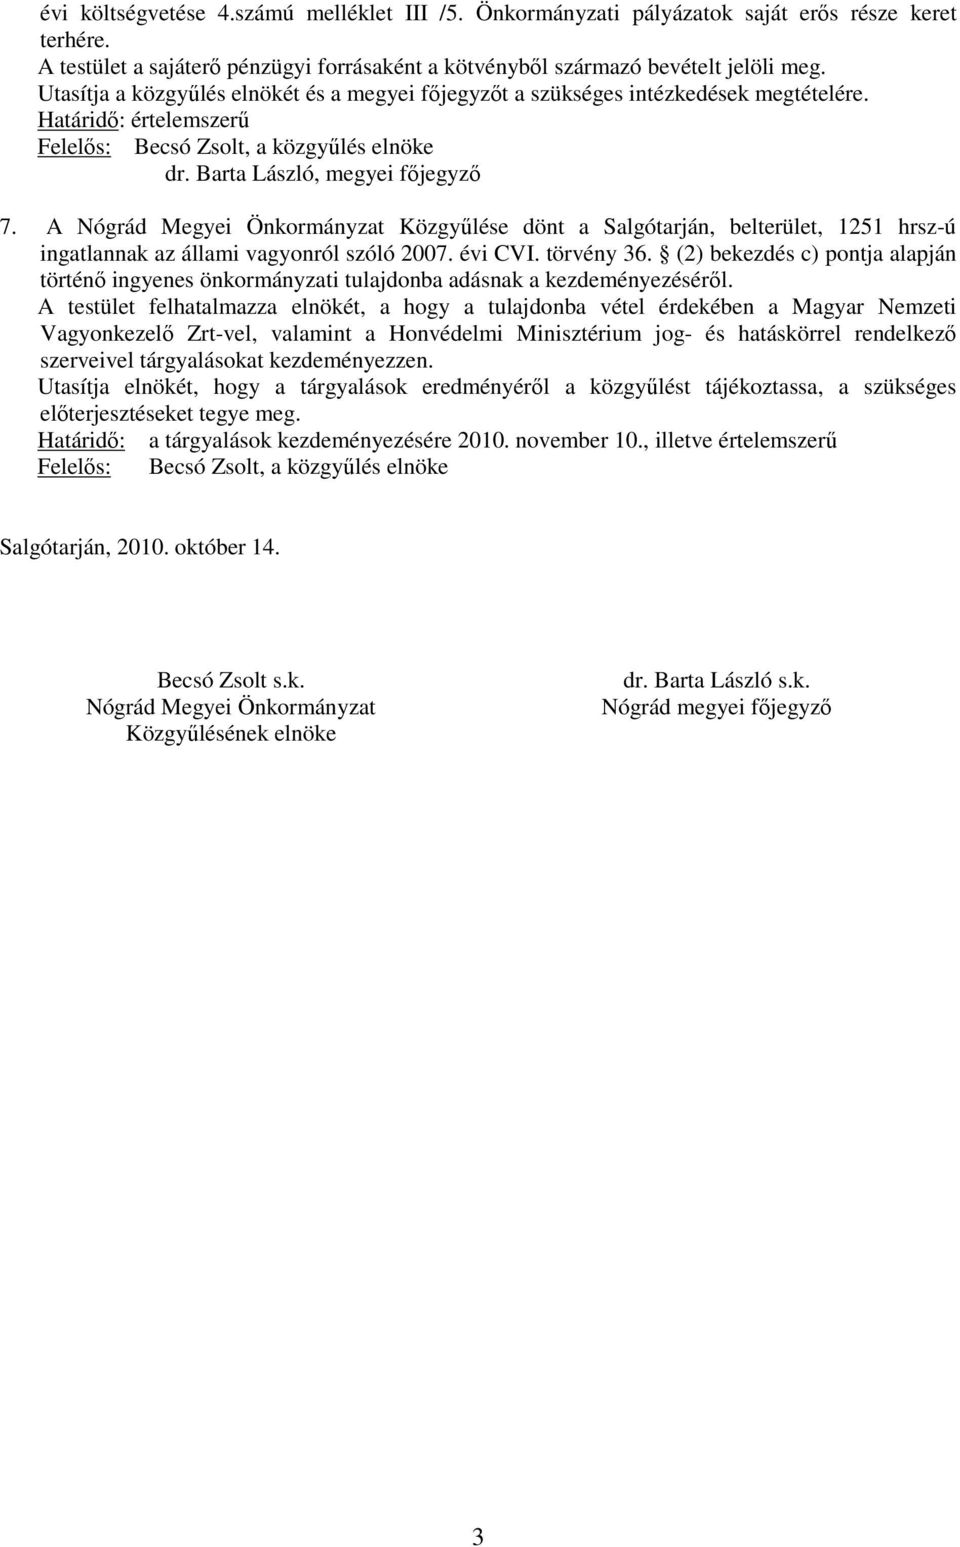 A Nógrád Megyei Önkormányzat Közgyűlése dönt a Salgótarján, belterület, 1251 hrsz-ú ingatlannak az állami vagyonról szóló 2007. évi CVI. törvény 36.